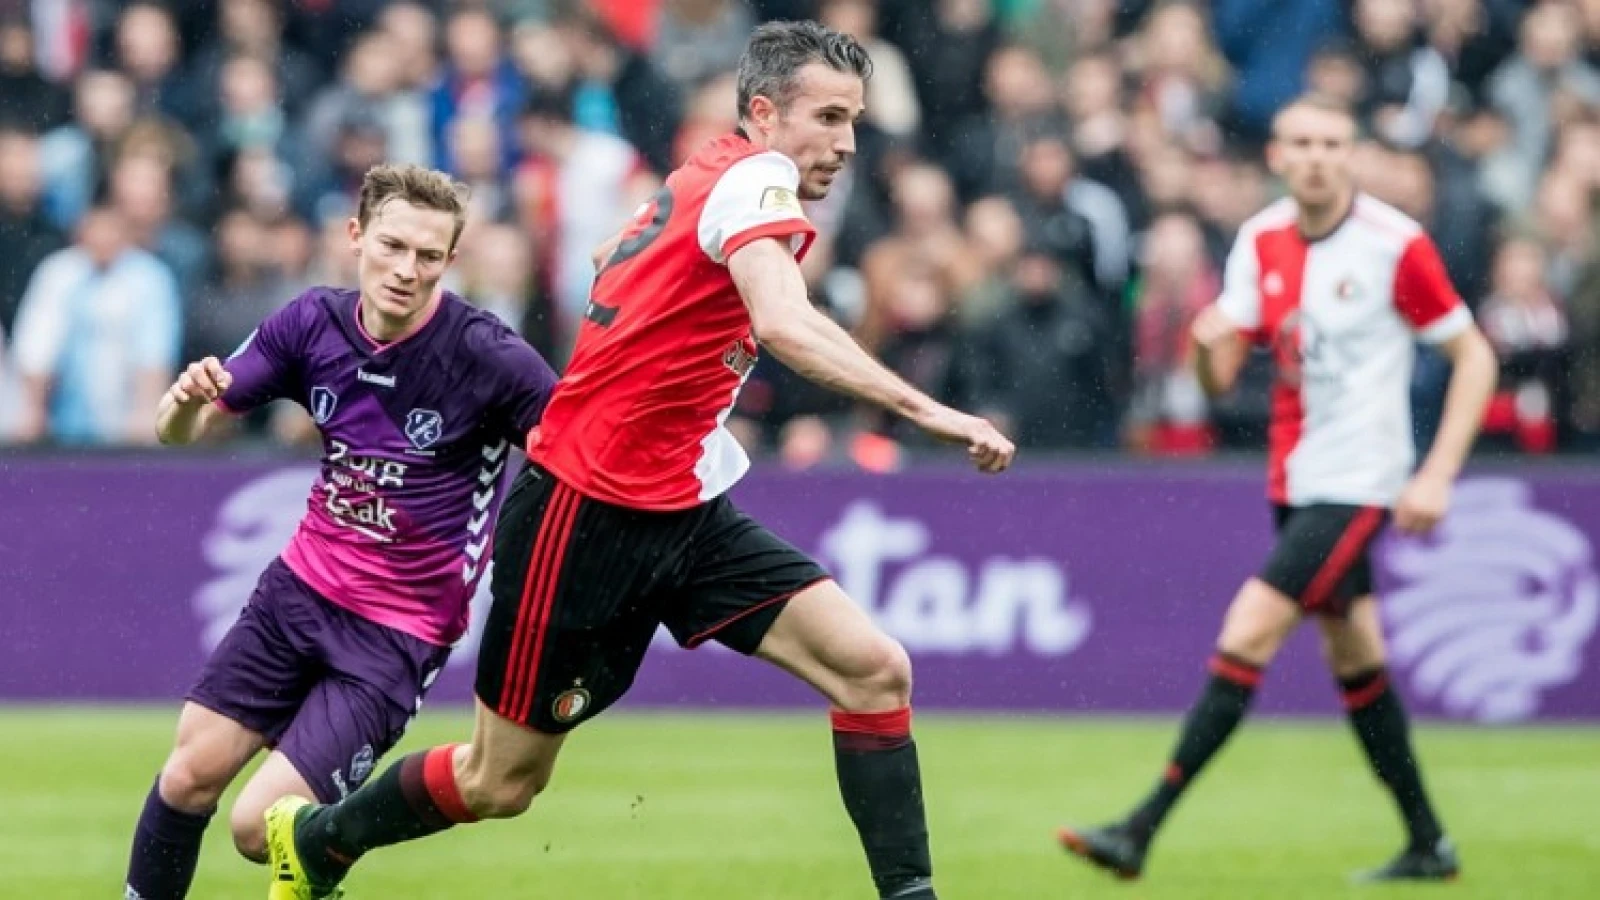 Van Persie over toekomst bij Feyenoord: 'We gaan relaxed kijken wat Feyenoord en ik willen'